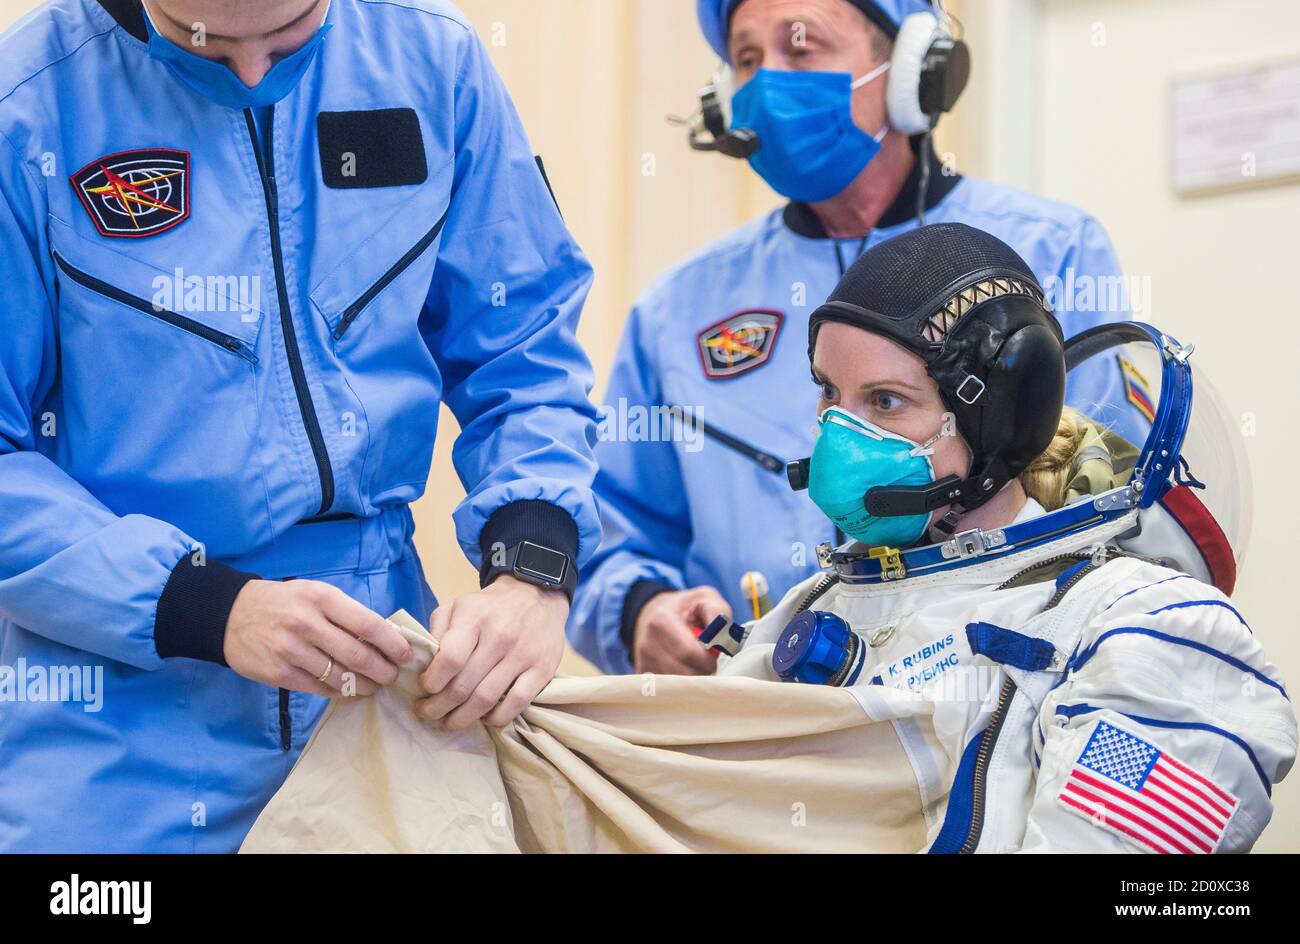 Expedition 64 NASA-Astronautin Kate Rubins während des Sokol Suit Pressure Check Tests zur Vorbereitung der kommenden russischen Sojus MS17-Sonde auf dem Kosmodrom Baikonur am 28. September 2020 in Baikonur, Kasachstan. Die Rakete soll am 14. Oktober mit den Besatzungsmitgliedern Kate Rubins von der NASA und den russischen Kosmonauten Sergey Ryzhikov und Sergey KUD-Sverchkov von Roskosmos zur Internationalen Raumstation starten. Stockfoto